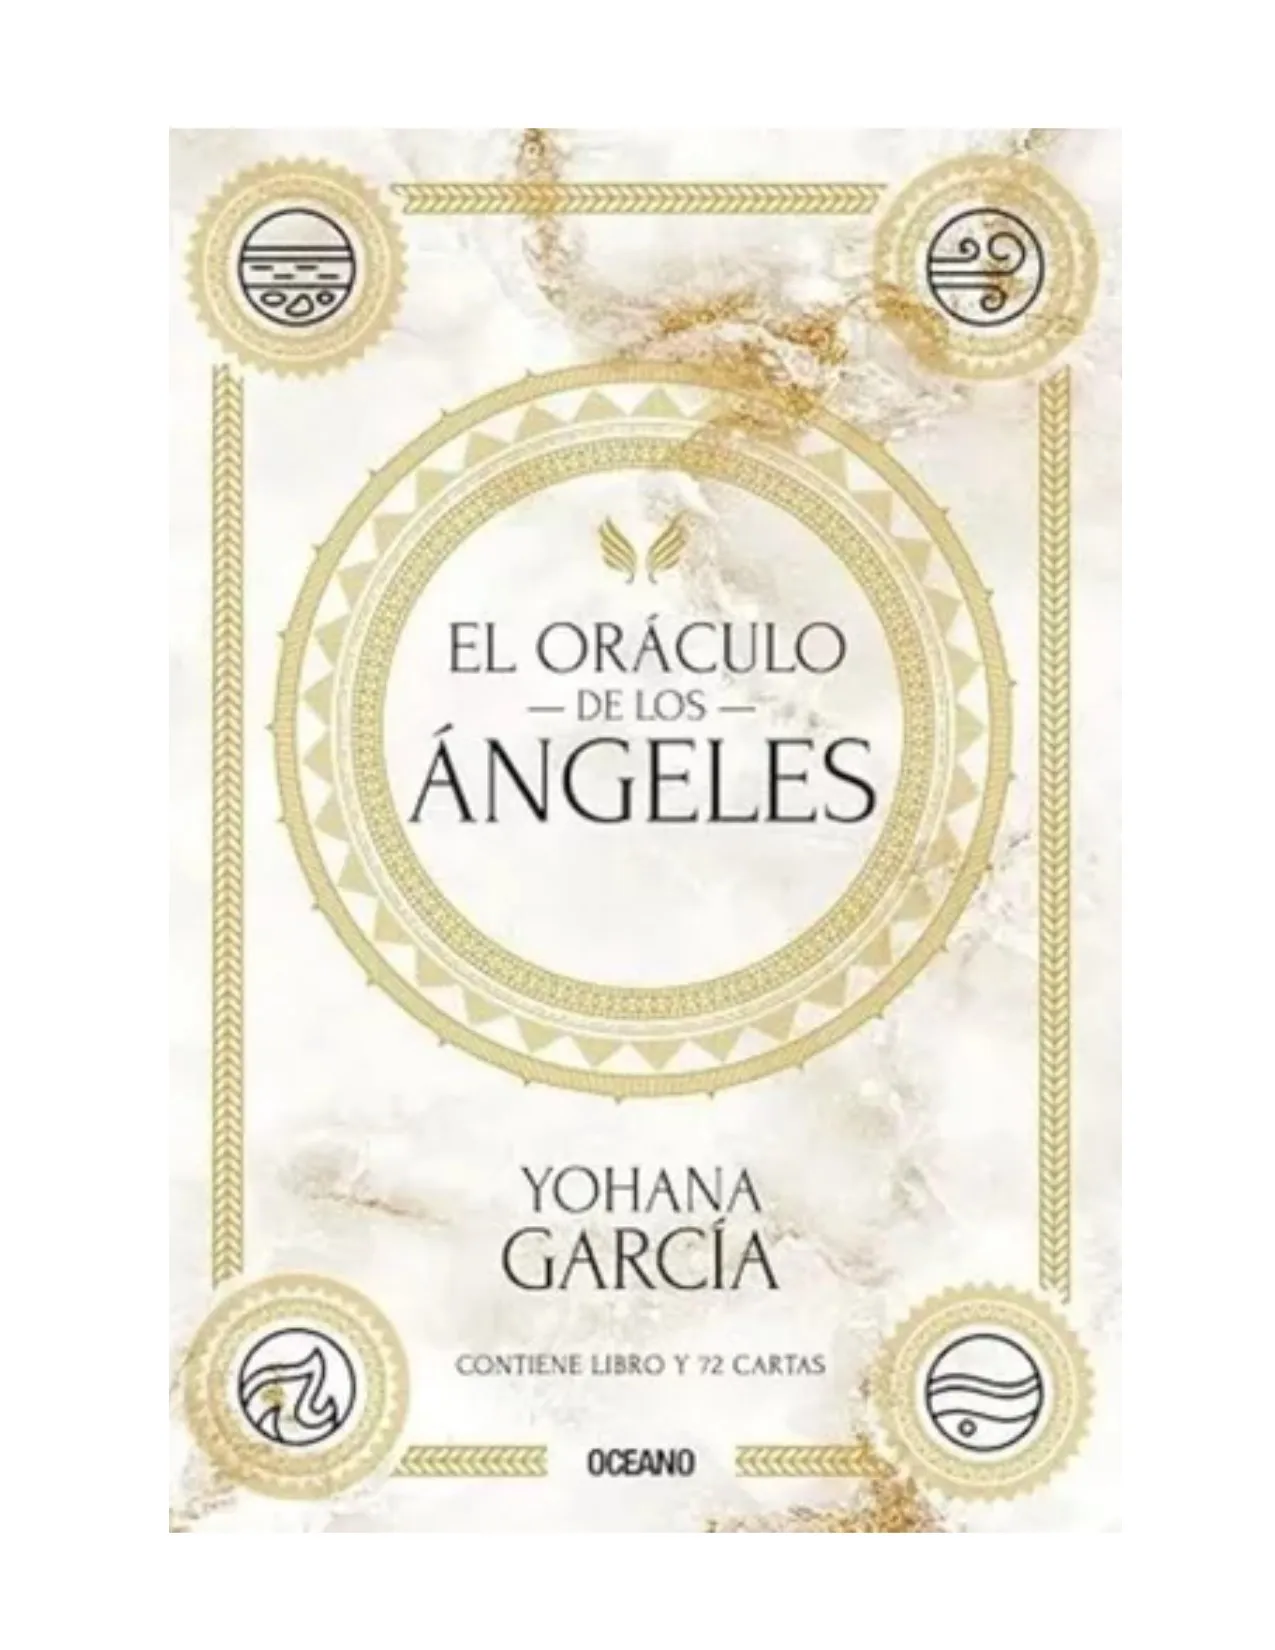 El Oráculo De Los Angeles, Yohana García.